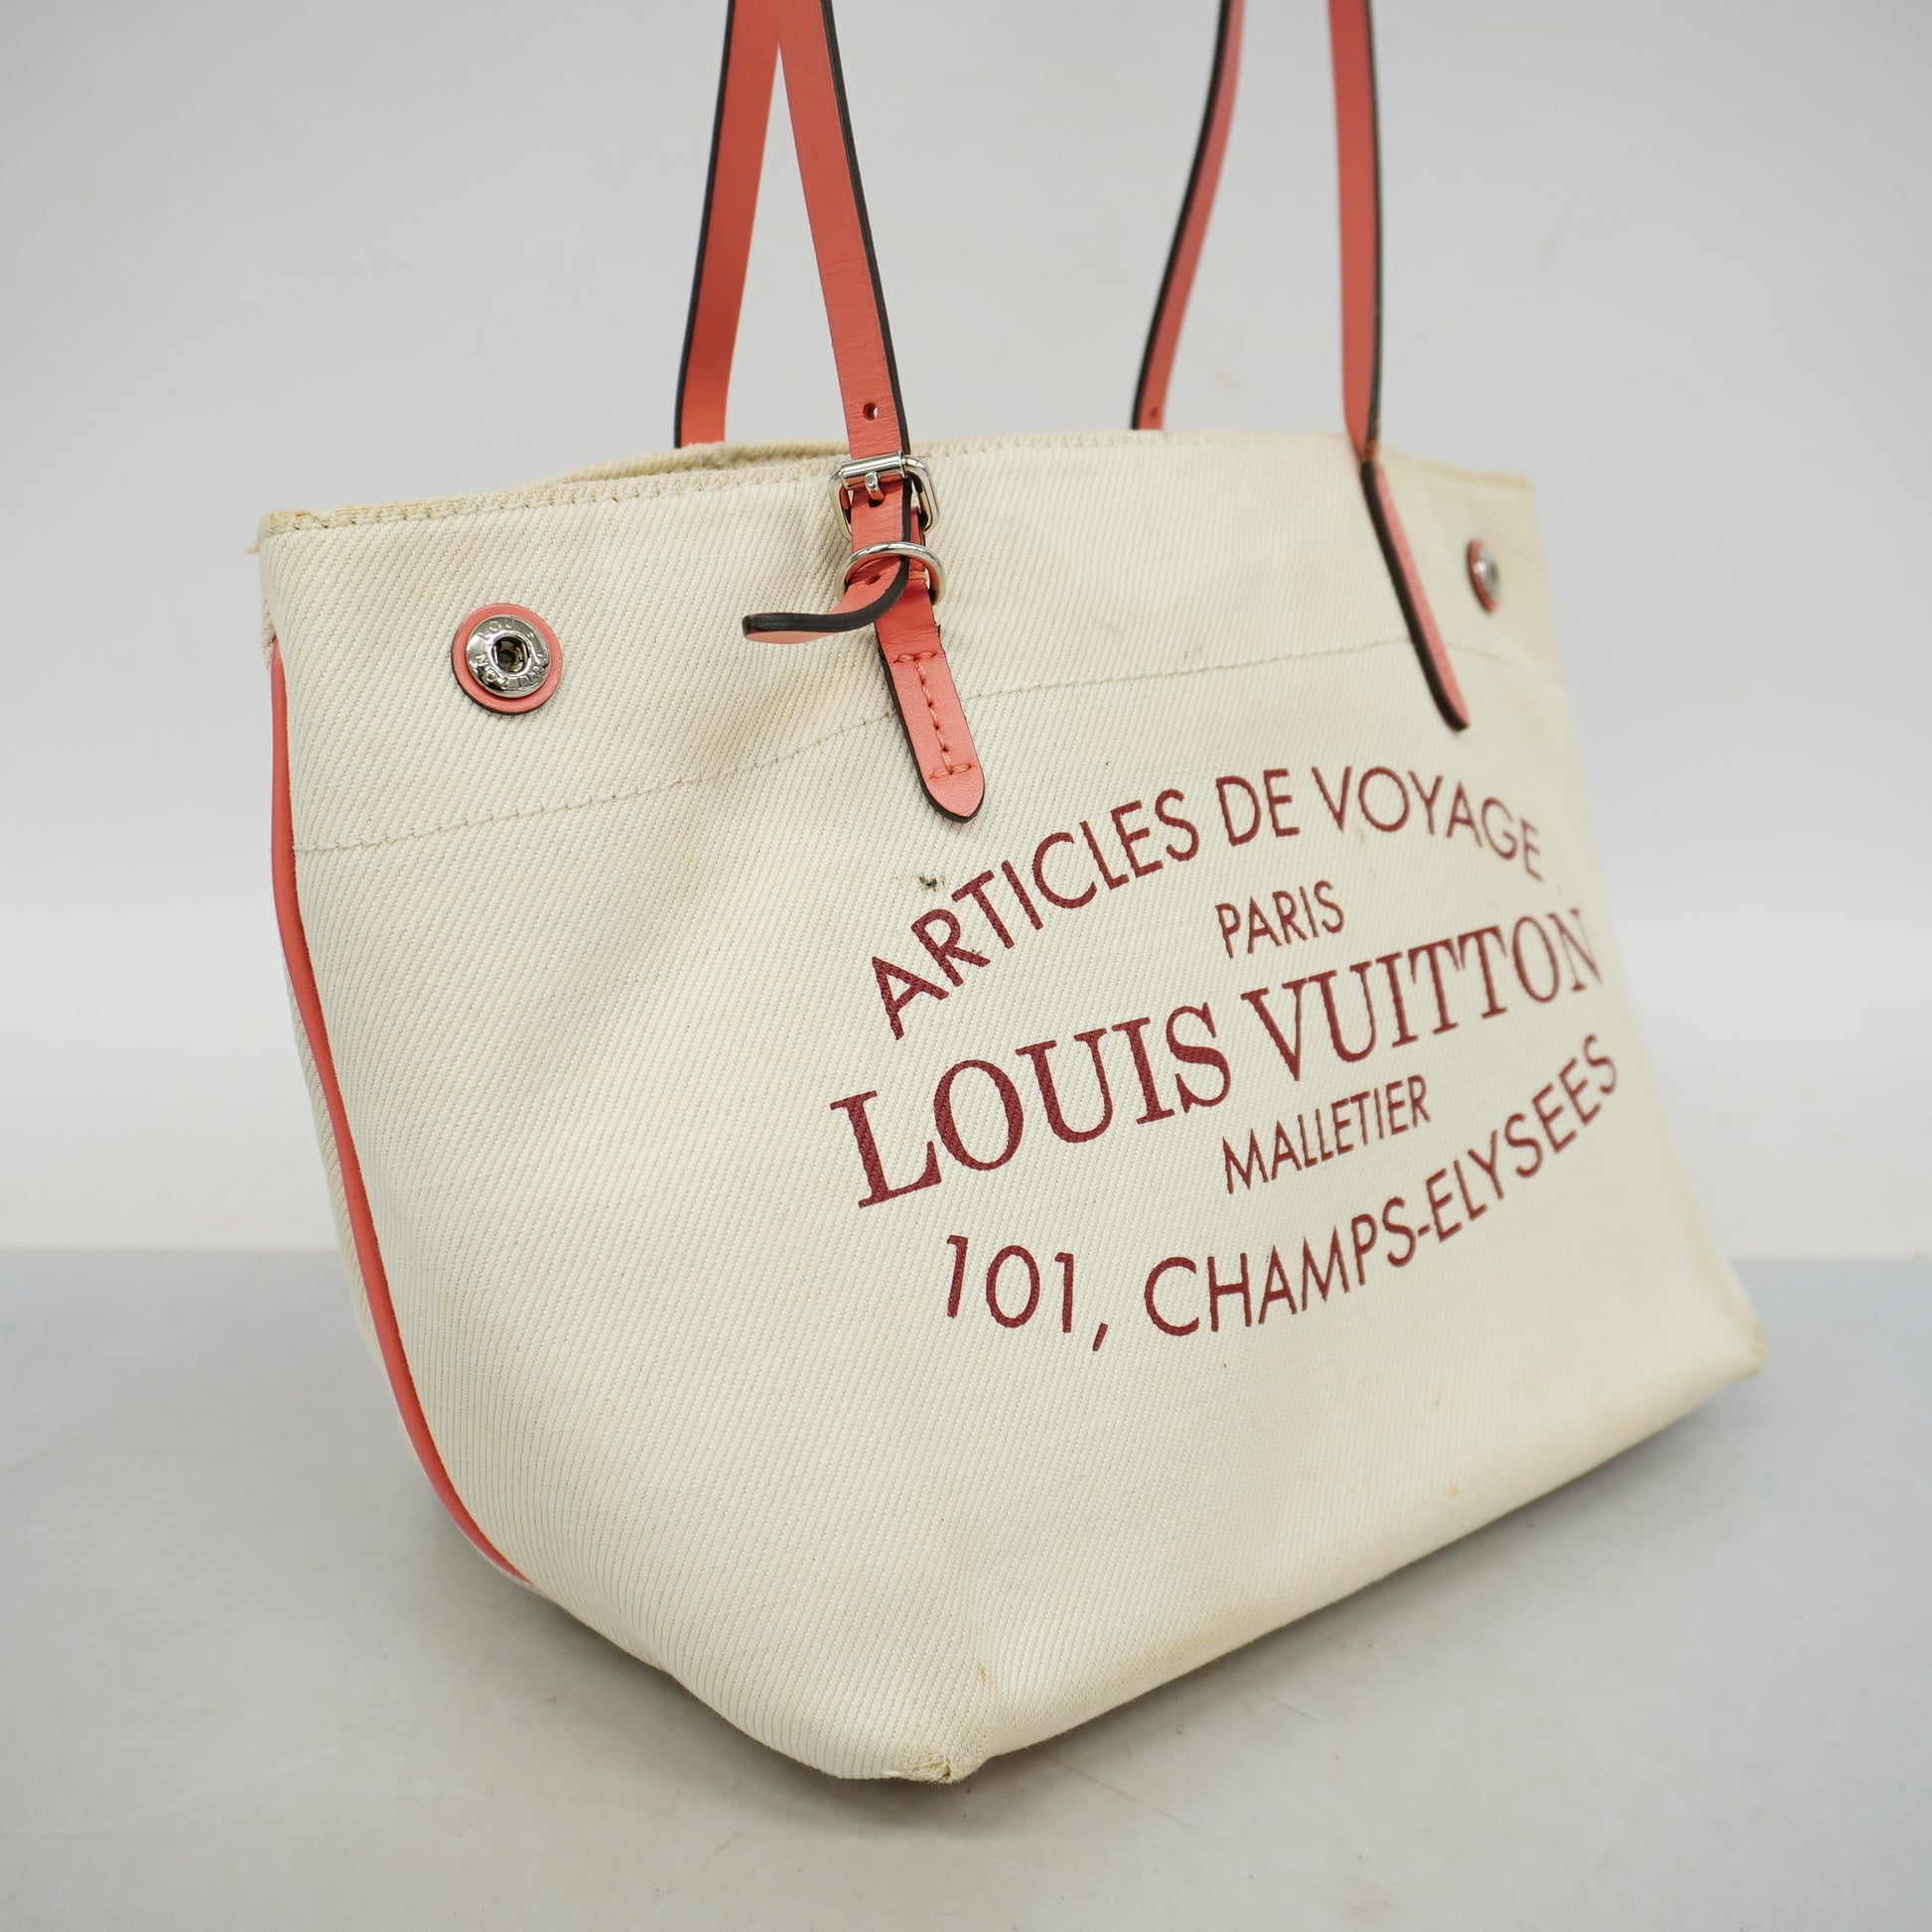 Louis Vuitton Limited Edition White Canvas Capri Articles De Voyage Cabas  Gm